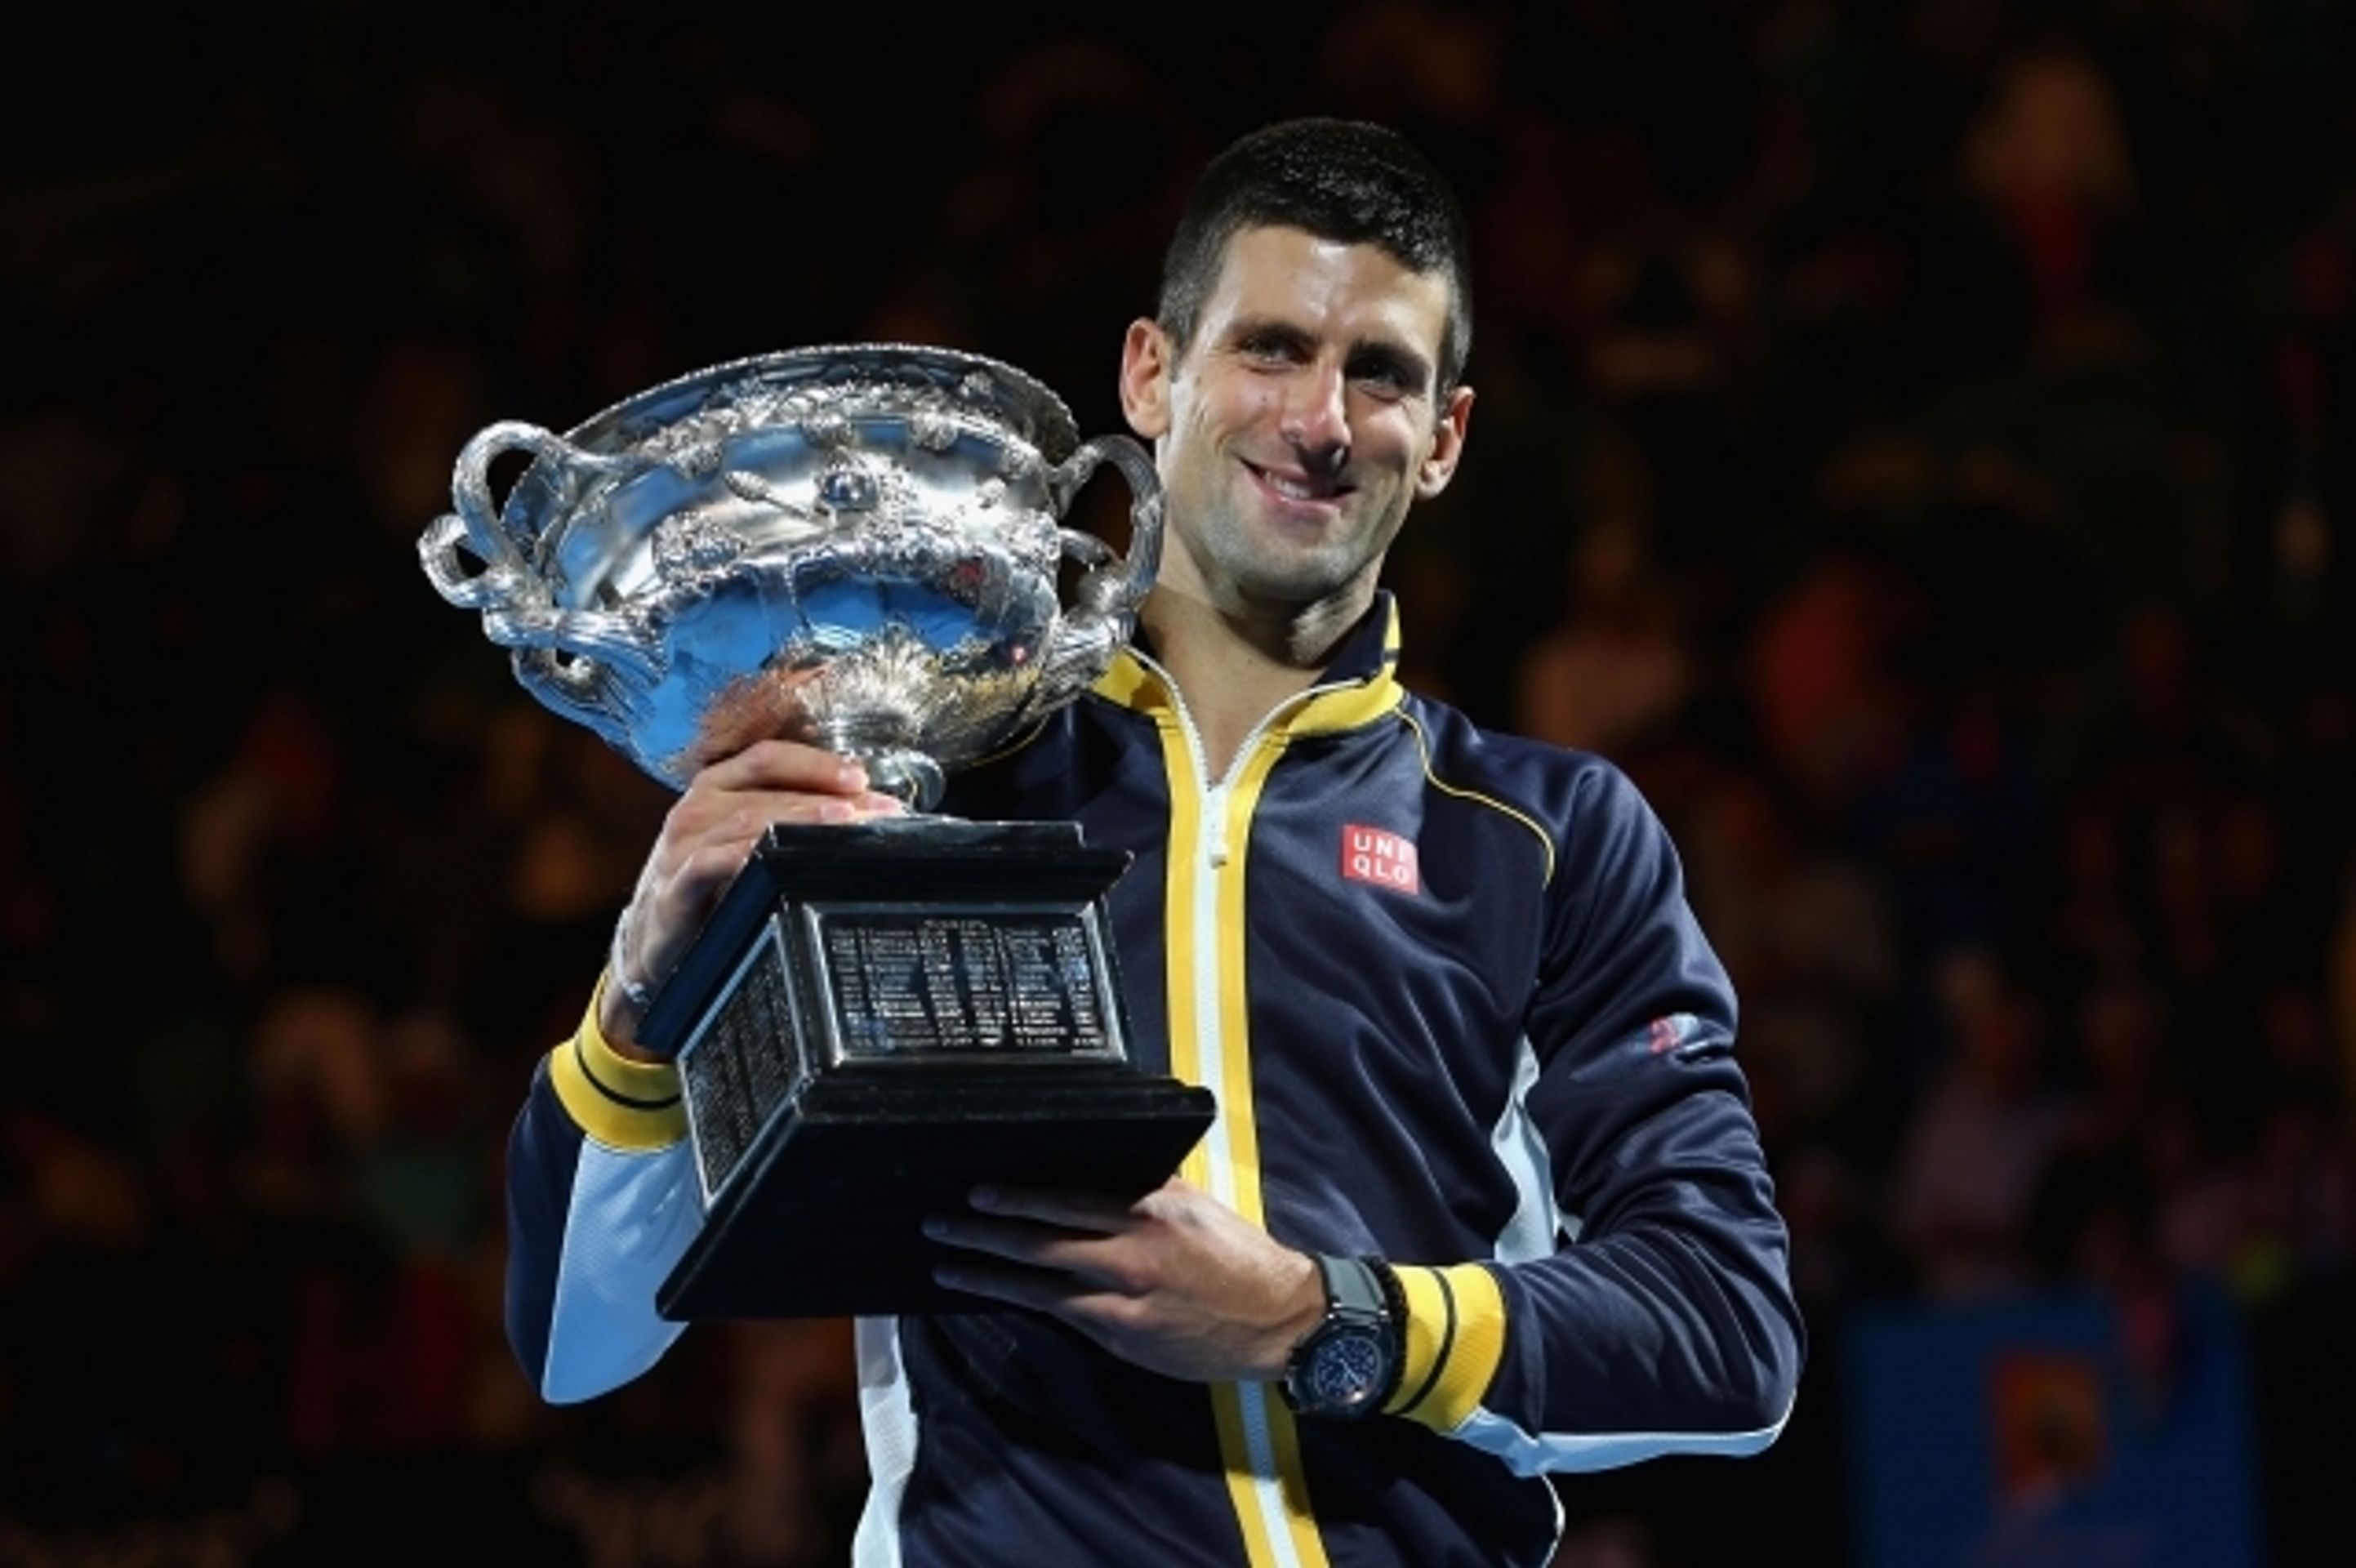 Novak Djokovič vyhrál potřetí v řadě Australian Open - 5 - GALERIE: Djokovič potřetí v řadě triumfuje na Australian Open (4/9)